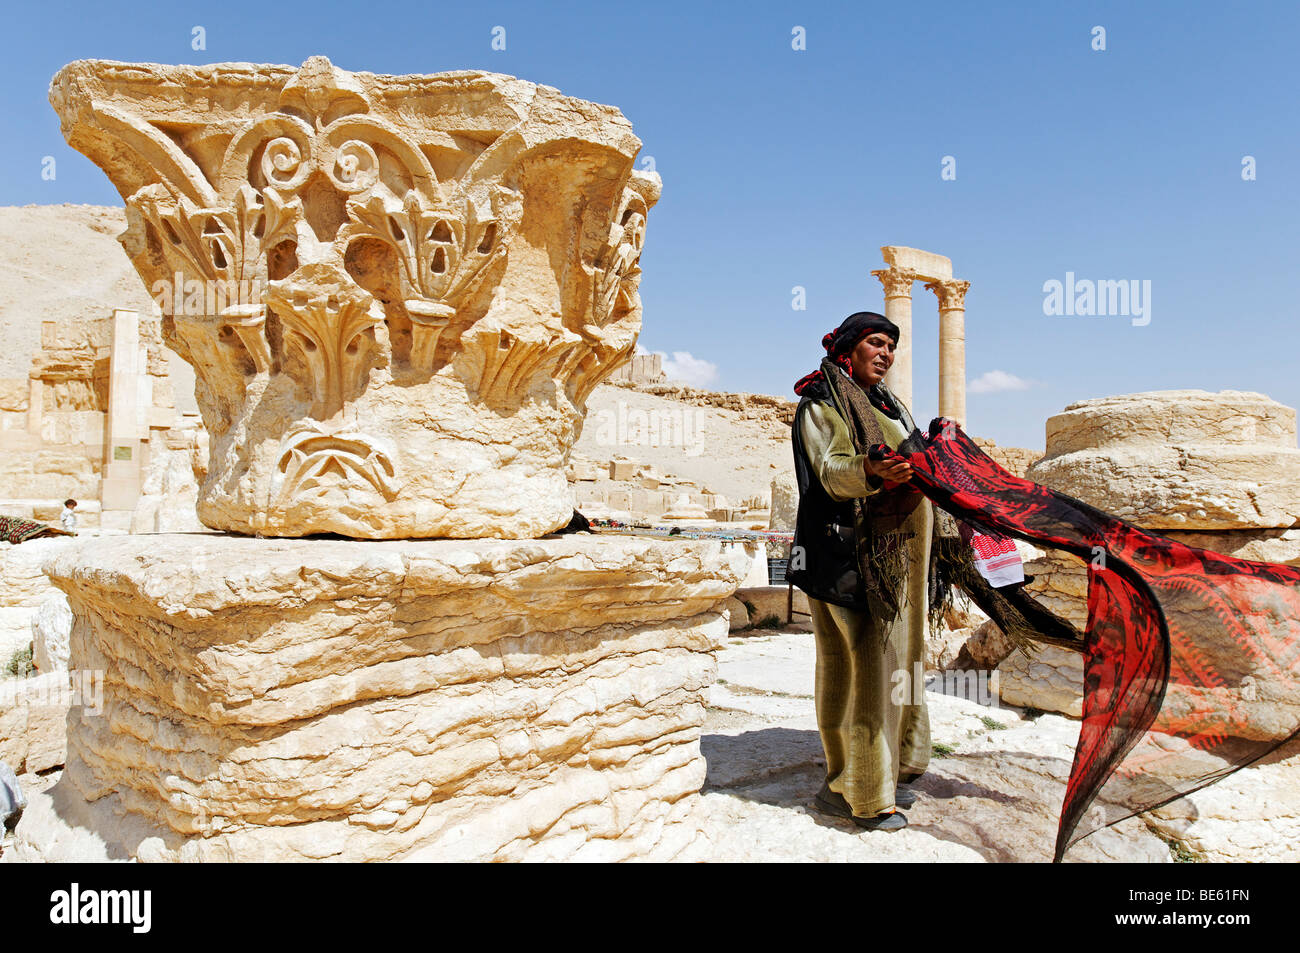 Sale of souvenirs, Palmyra excavation site, Tadmur, Syria, Asia Stock Photo